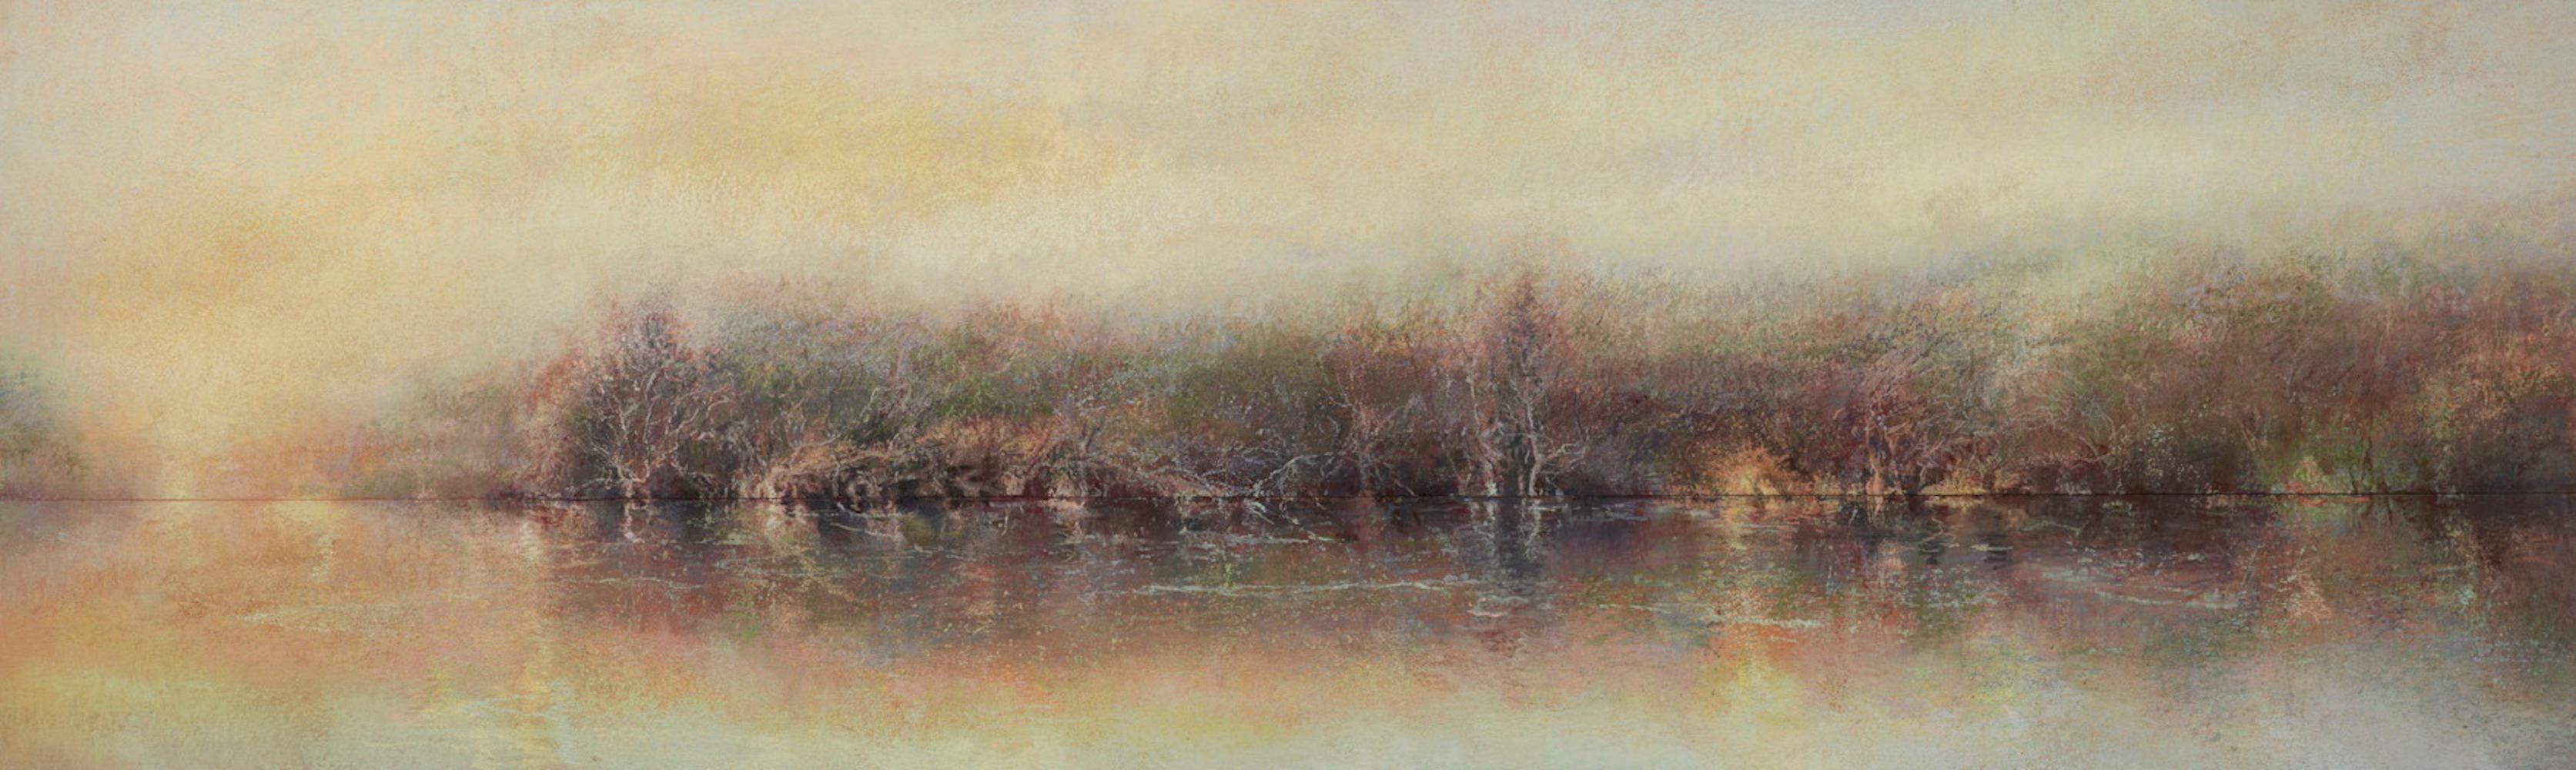 River Pastell / zeitgenössischer minimalistischer, warmer, ruhiger etherischer Realismus